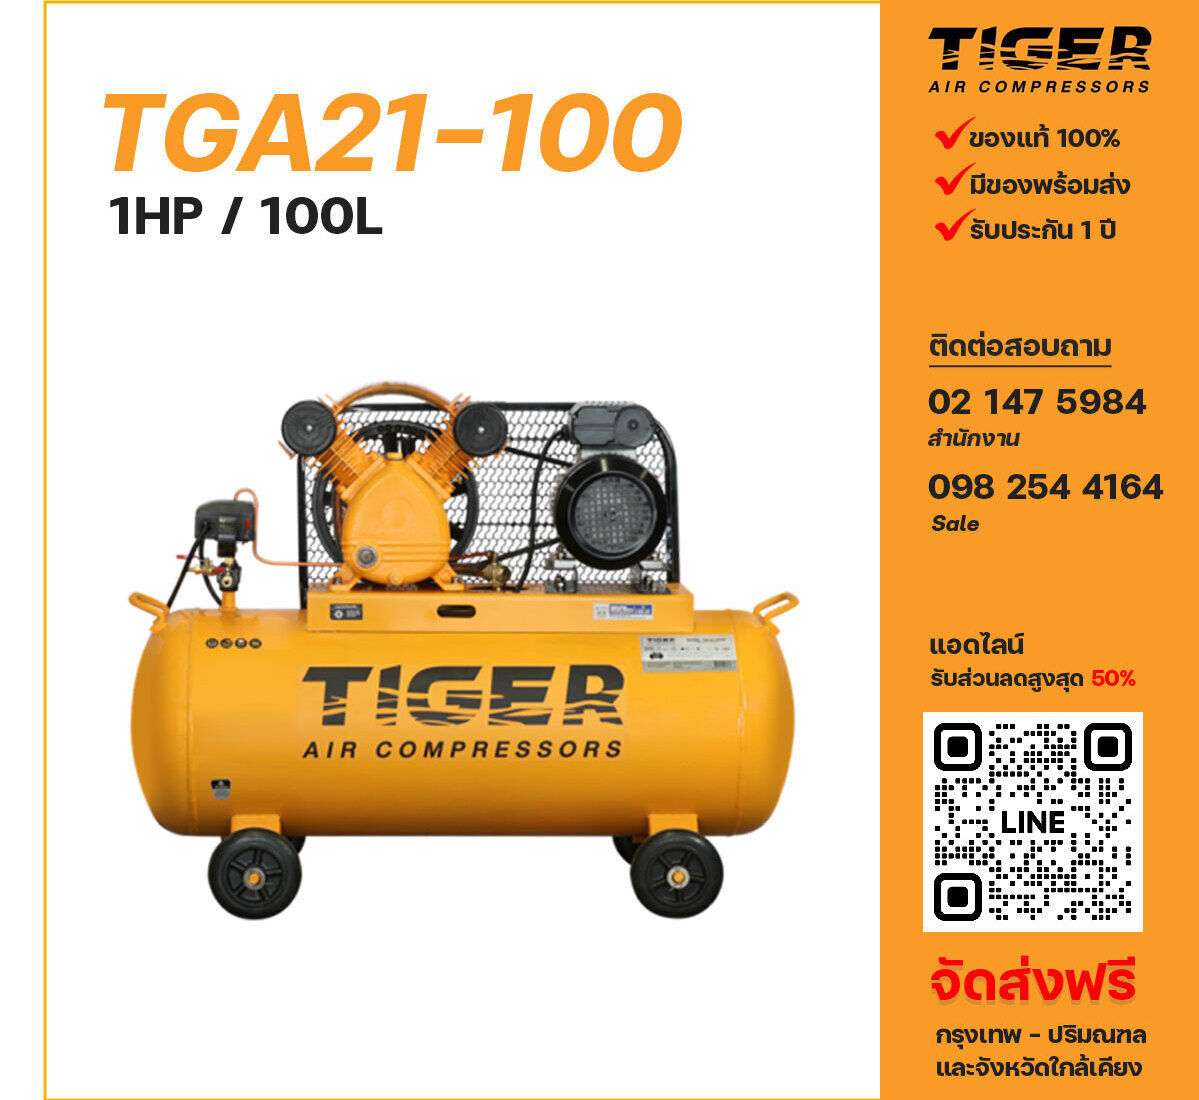 ปั๊มลมไทเกอร์ TIGER TGA21-100 220V ปั๊มลมลูกสูบ ขนาด 2 สูบ 1 แรงม้า 100 ลิตร TIGER พร้อมมอเตอร์ ไฟ 220V ส่งฟรี กรุงเทพฯ-ปริมณฑล รับประกัน 1 ปี